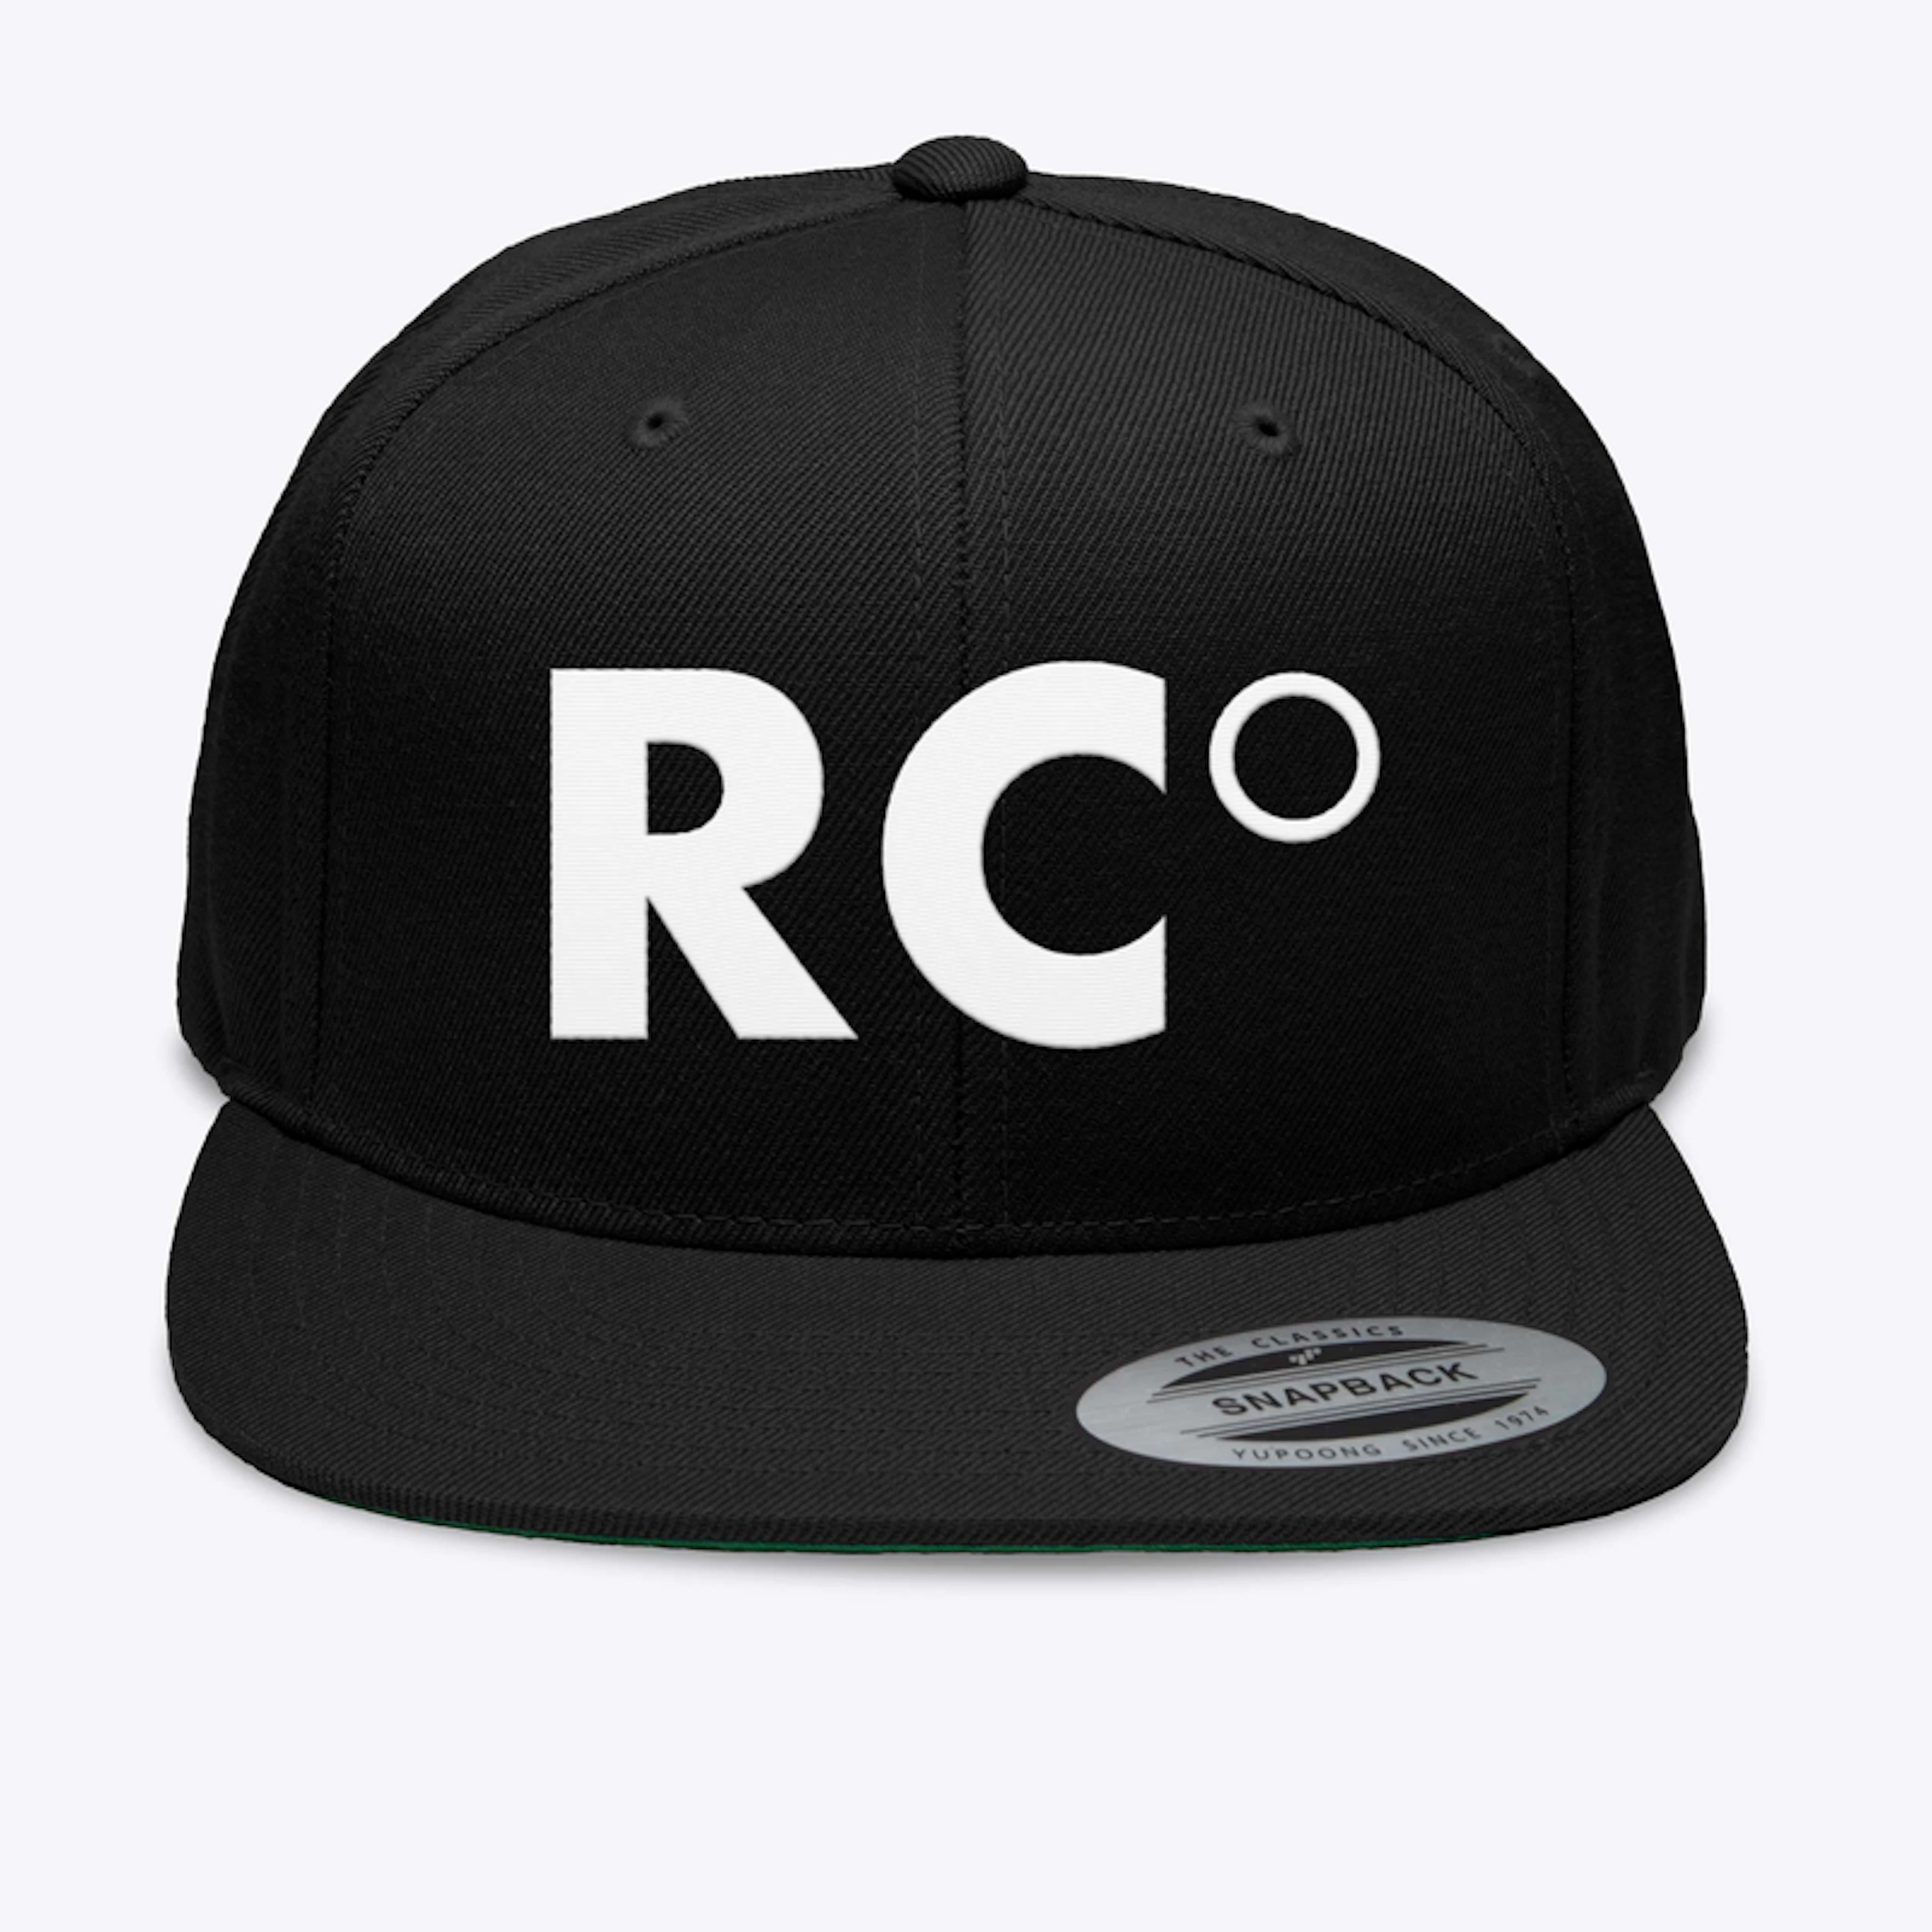 RC° Signature Hats